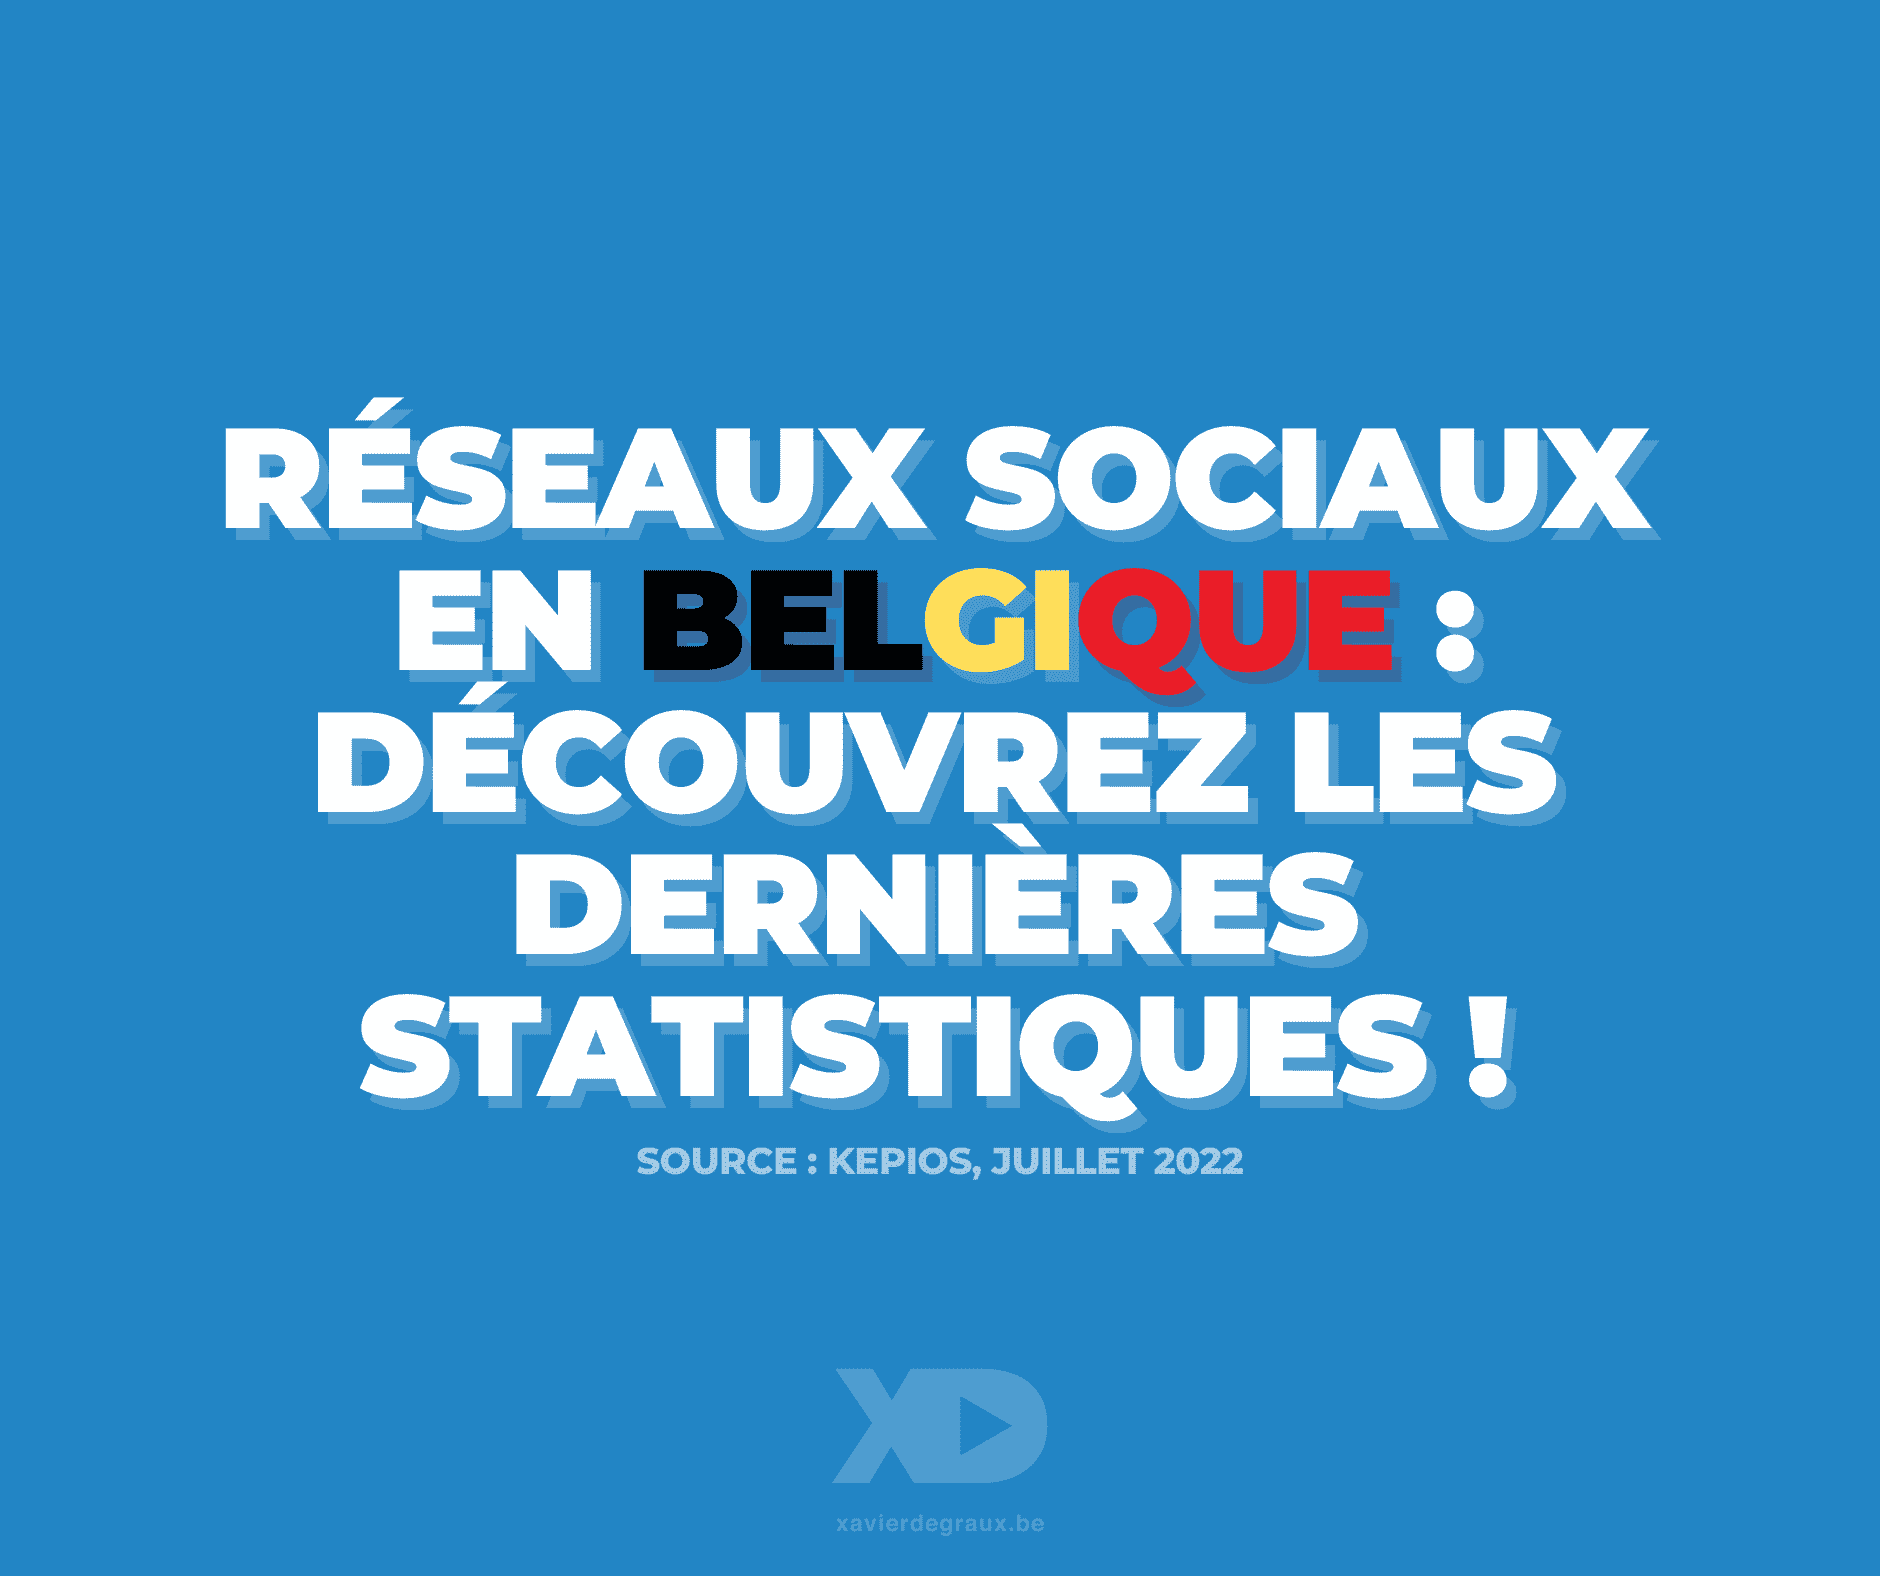 Réseaux sociaux en Belgique : les dernières statistiques (étude juillet 2022)